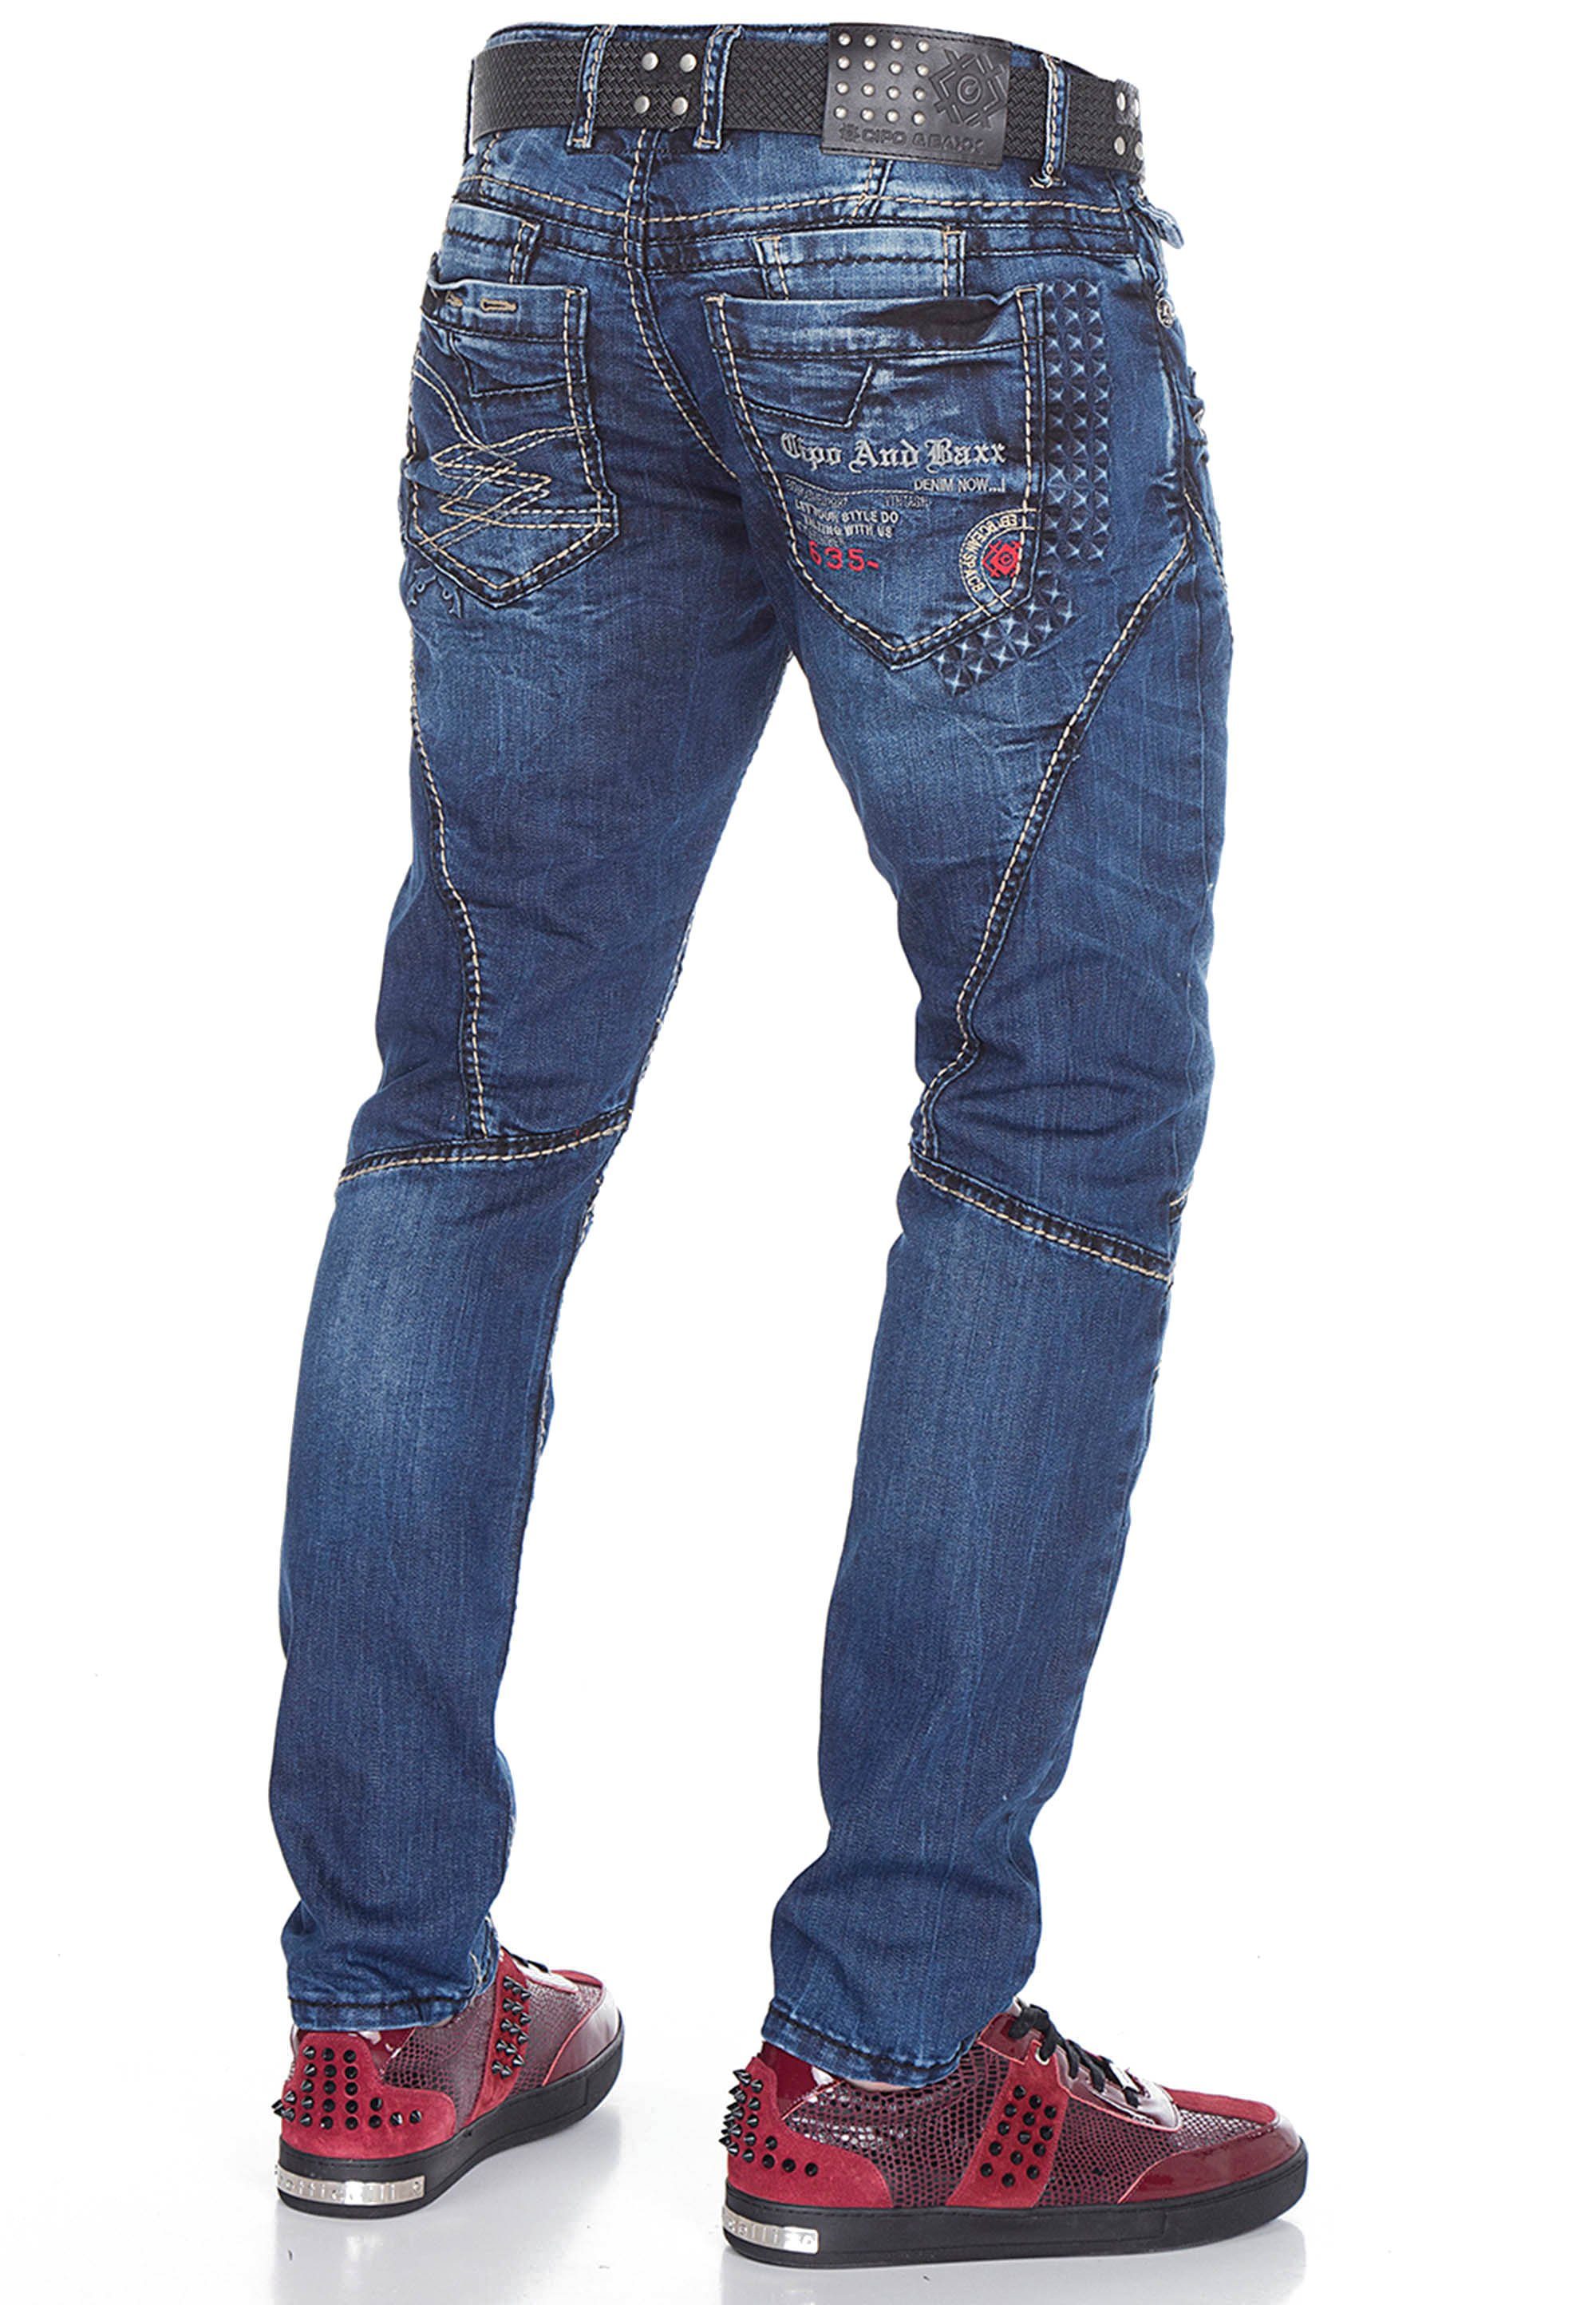 & Straight-Fit mit Cipo Bequeme in trendigen Ziernähten Baxx Jeans